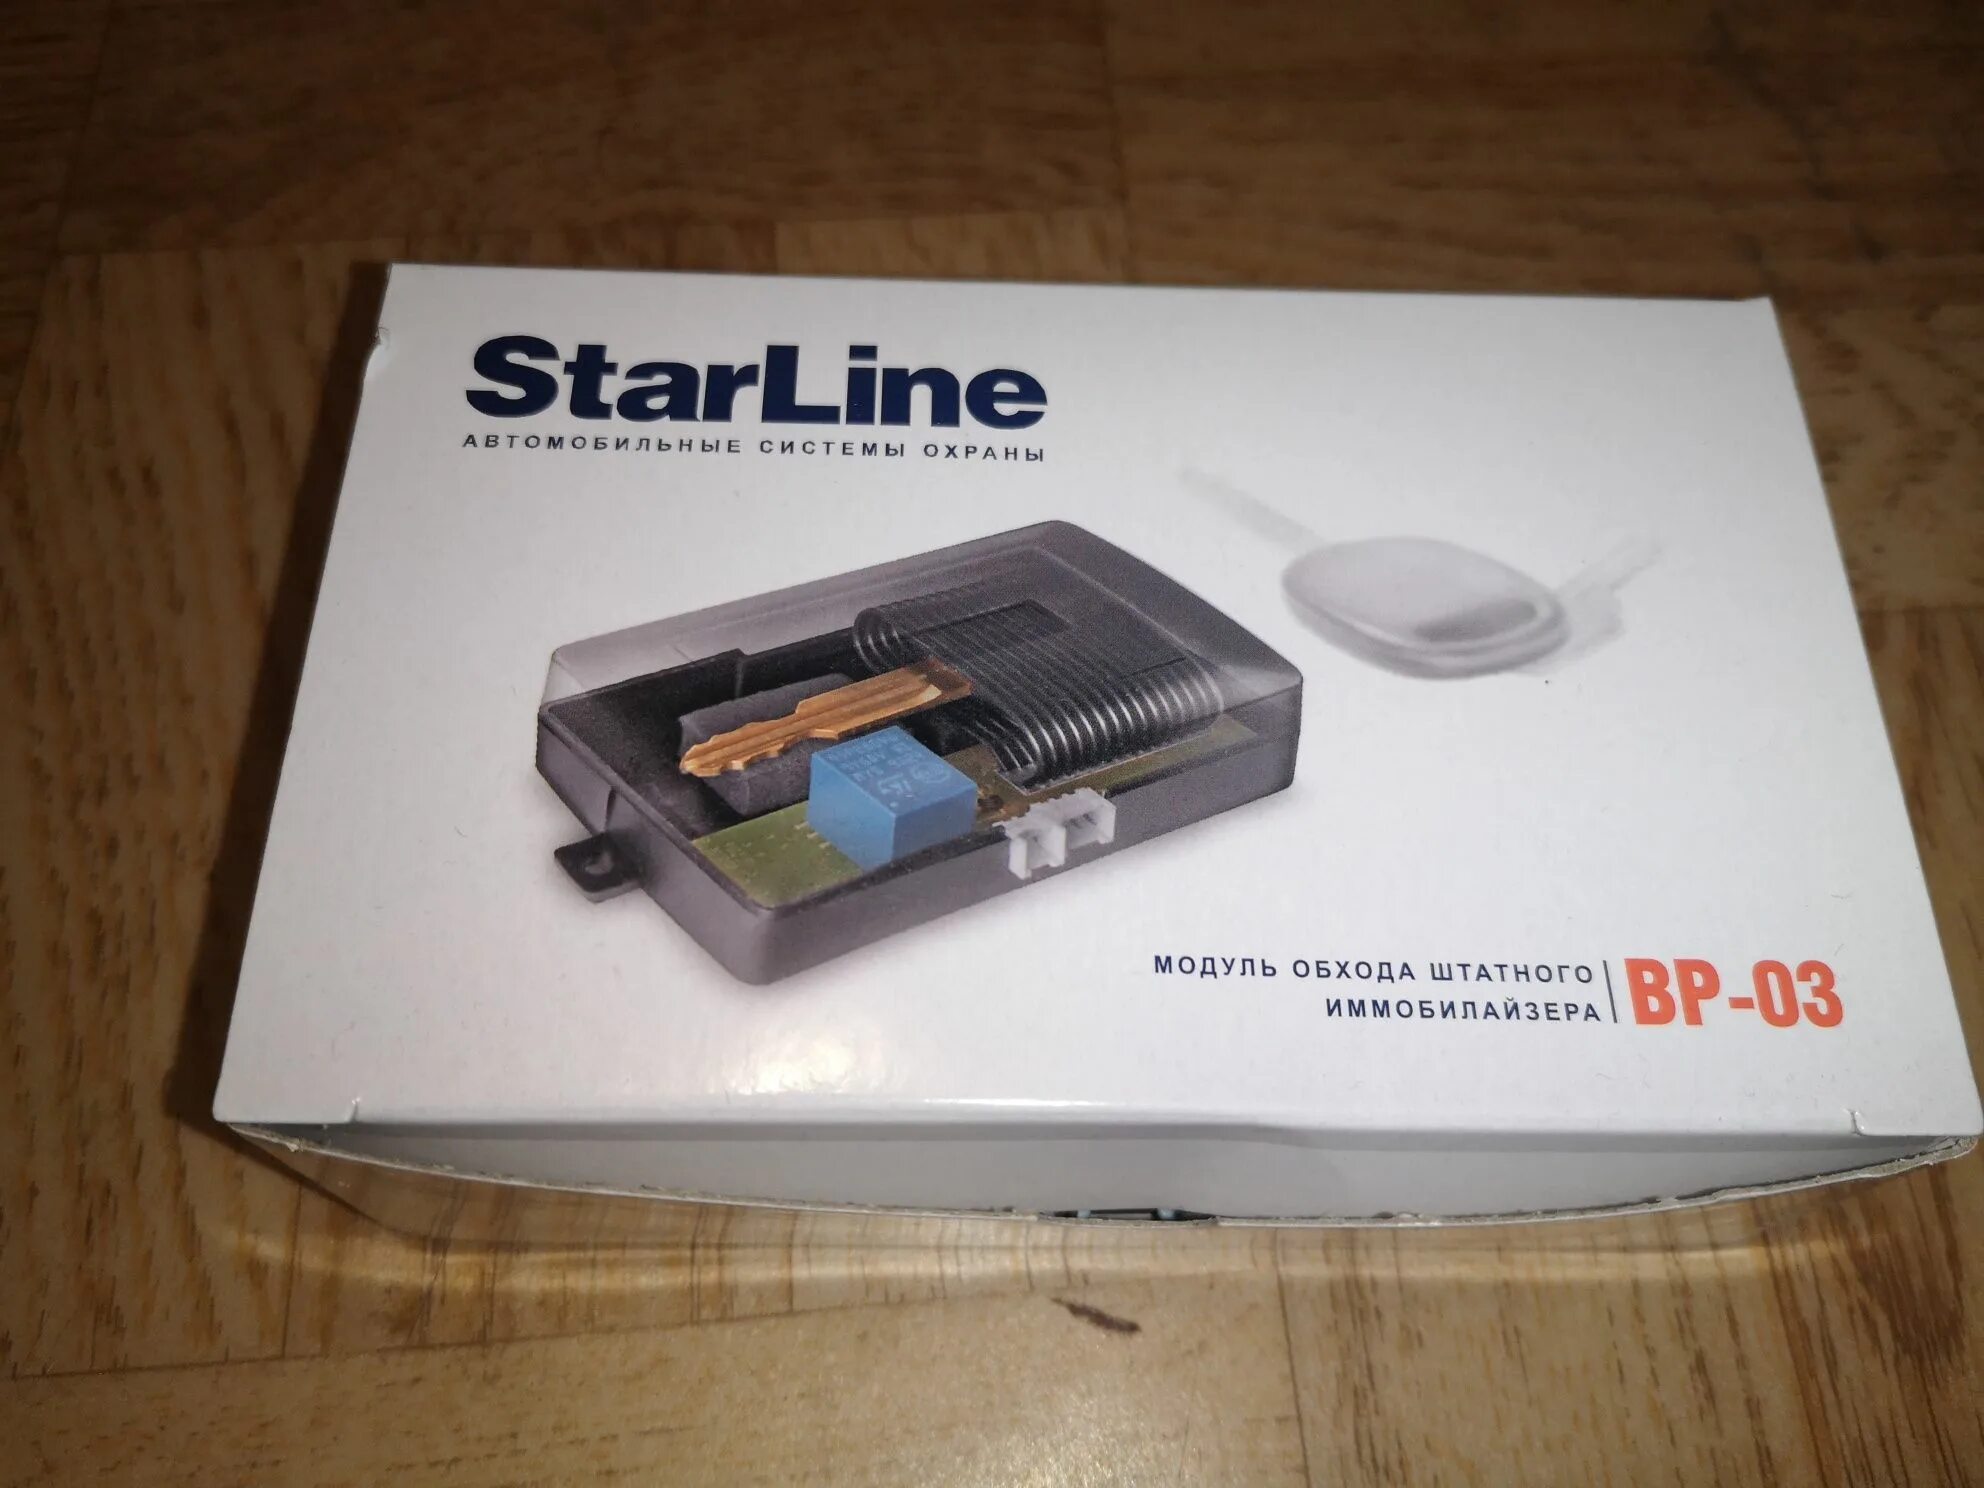 Блок обхода иммобилайзера STARLINE a8. Обходчик иммобилайзера STARLINE a93 v2. Модуль обхода штатного иммобилайзера STARLINE. Обходчик иммобилайзера STARLINE 1191. Обход иммобилайзера старлайн